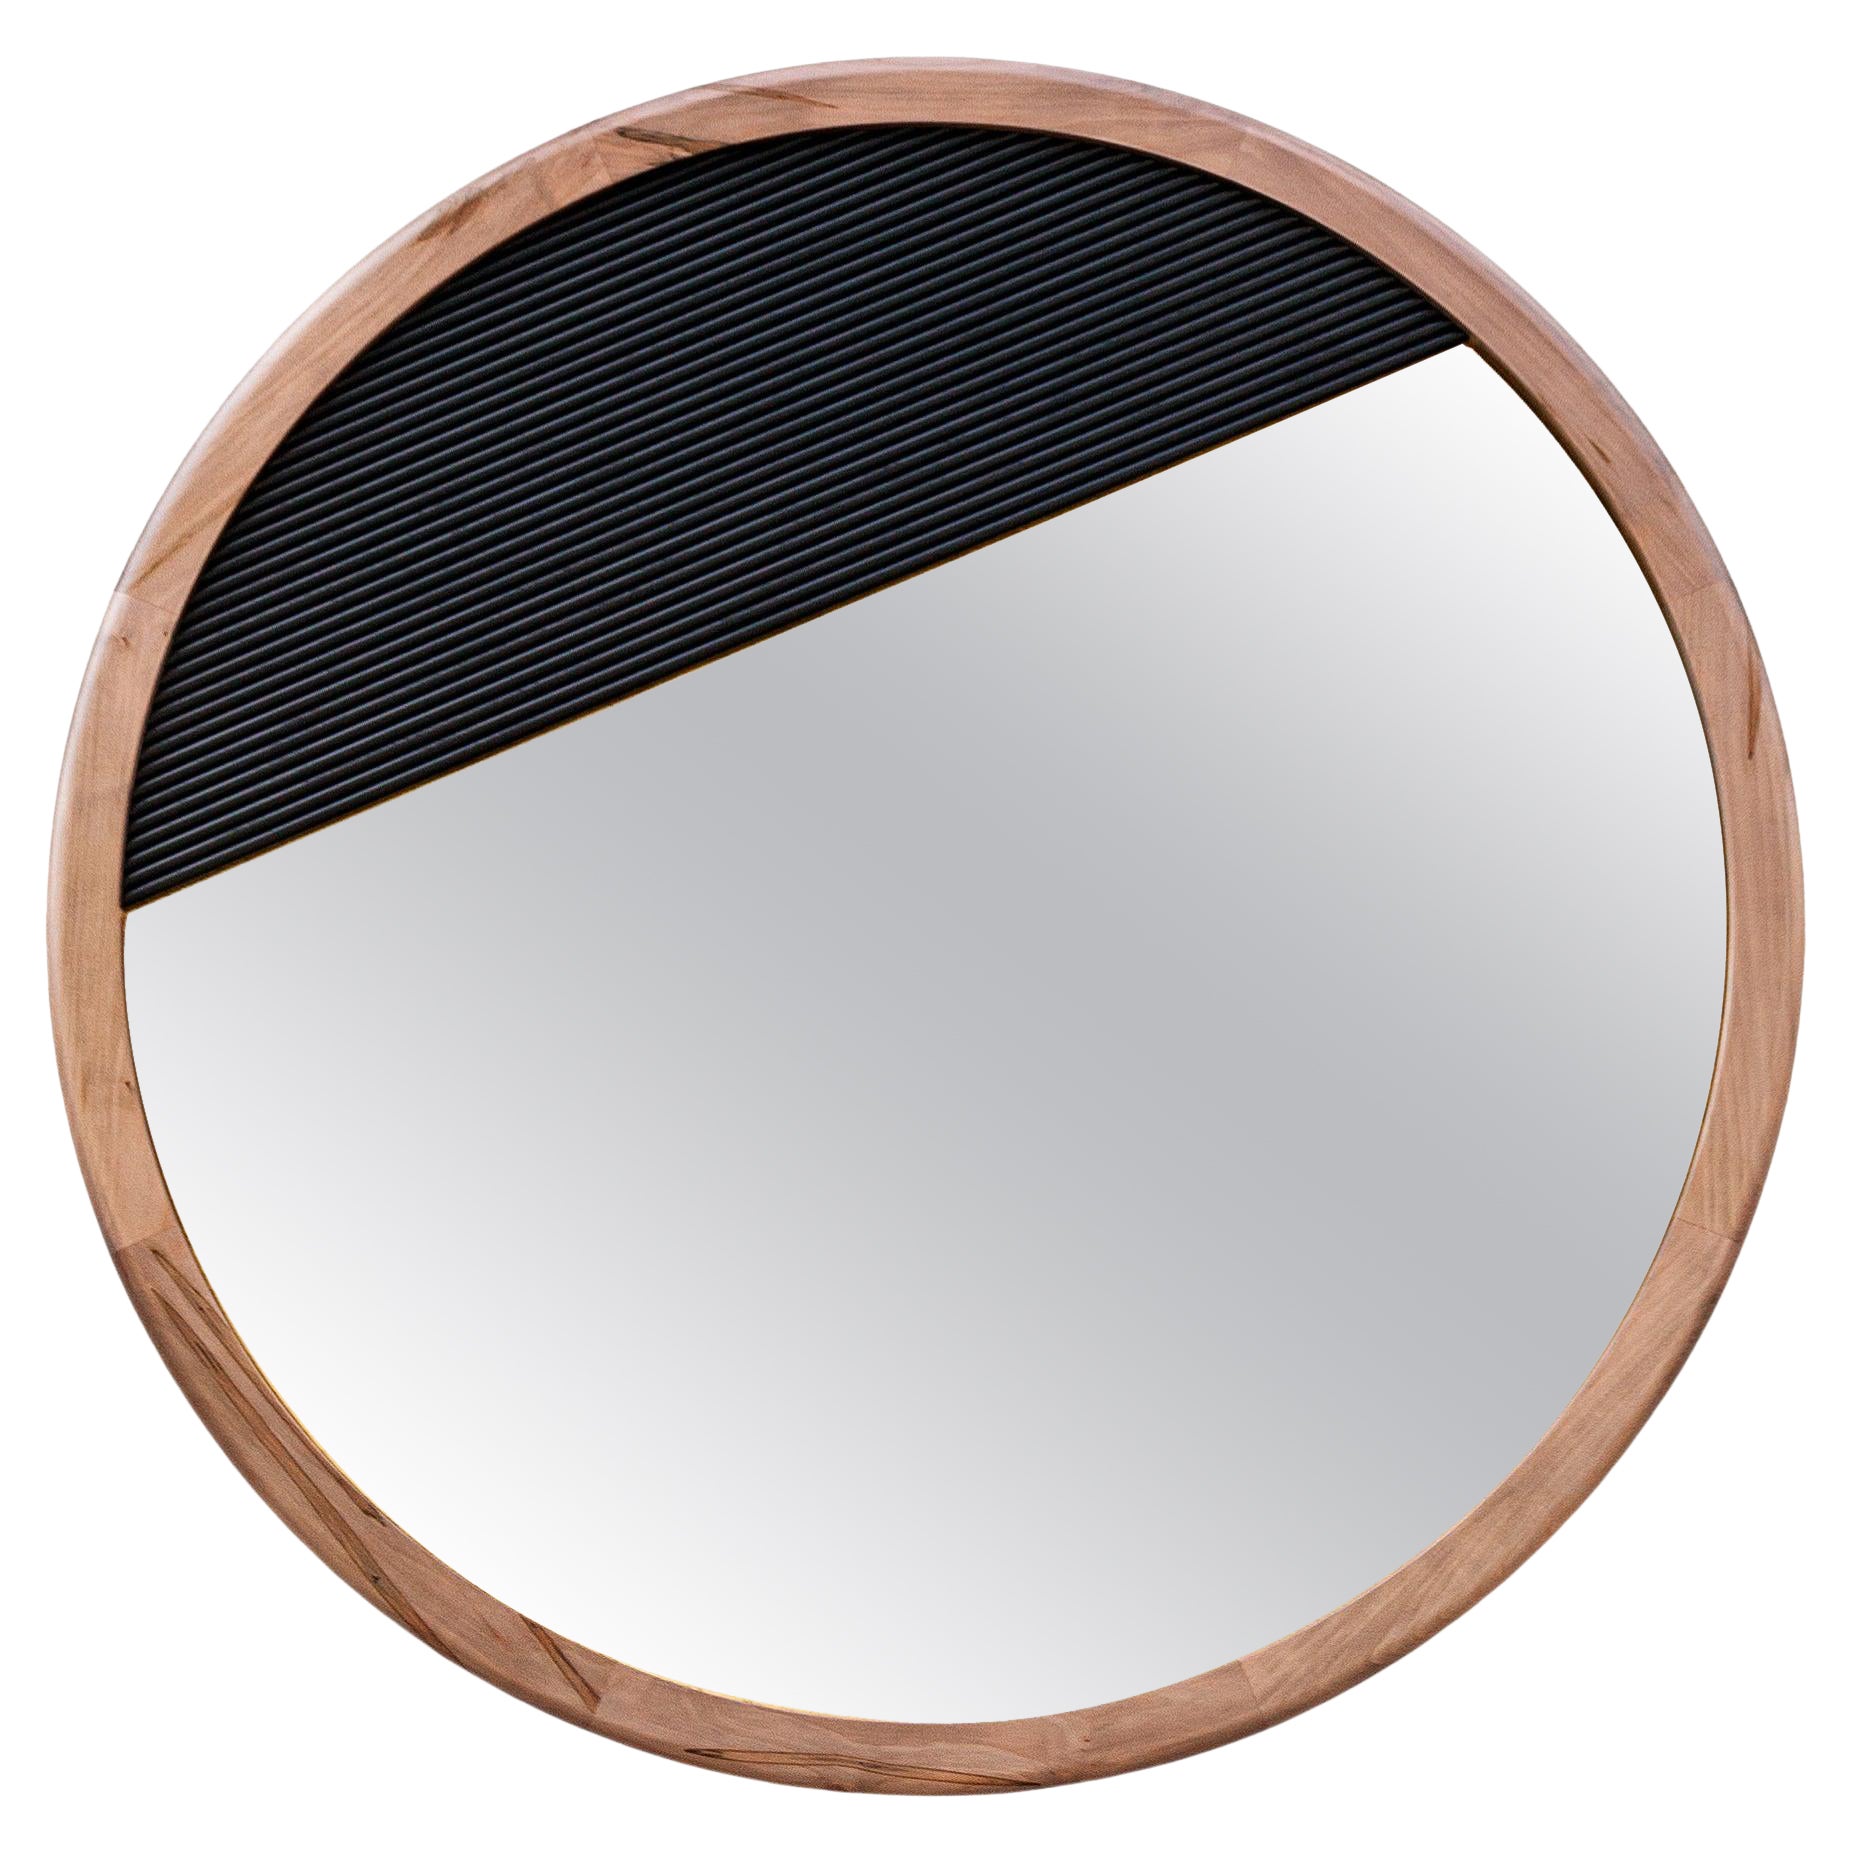 Anpassbarer Spiegel aus Holz und Metall, Kenmare-Spiegel